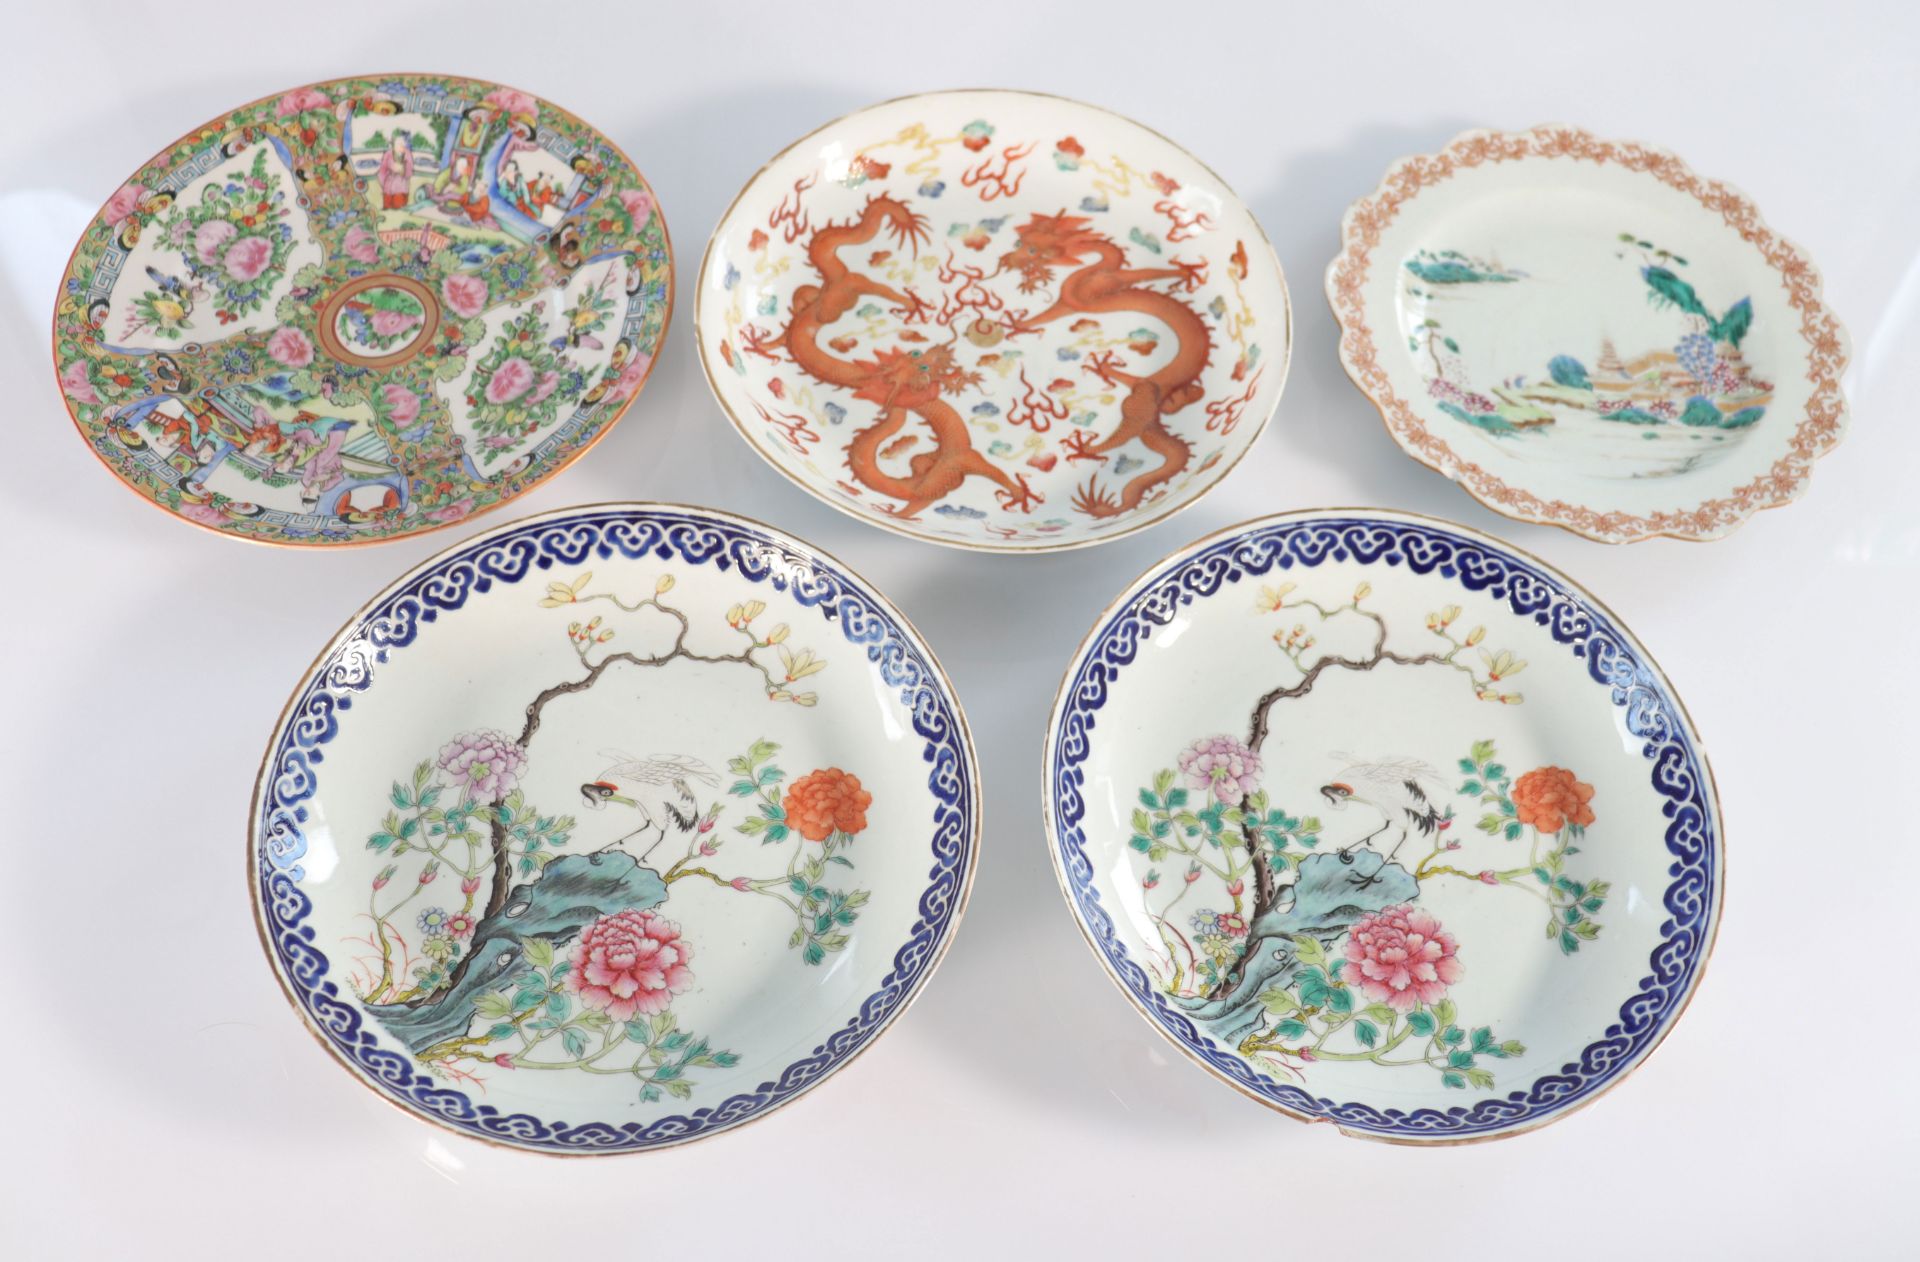 China set of plates (5) various